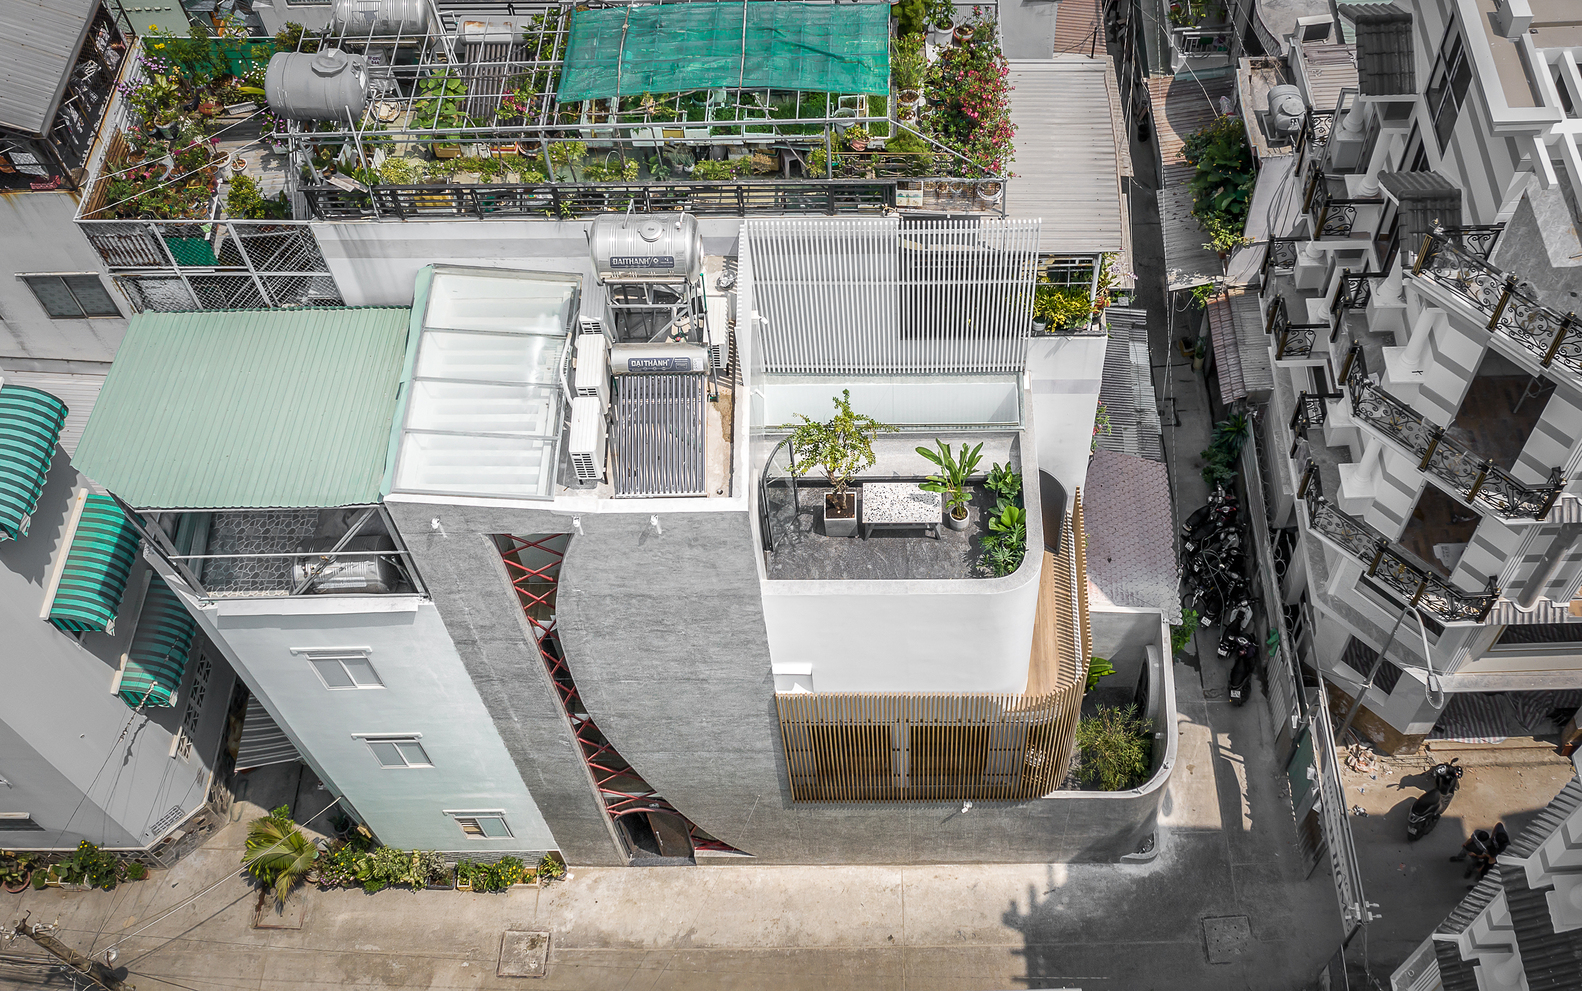 Hình ảnh chụp từ trên cao cho thấy “Alone House” nằm trong con hẻm nhỏ ở quận Bình Chánh nên khoảng cách với các nhà đối diện khá gần. 